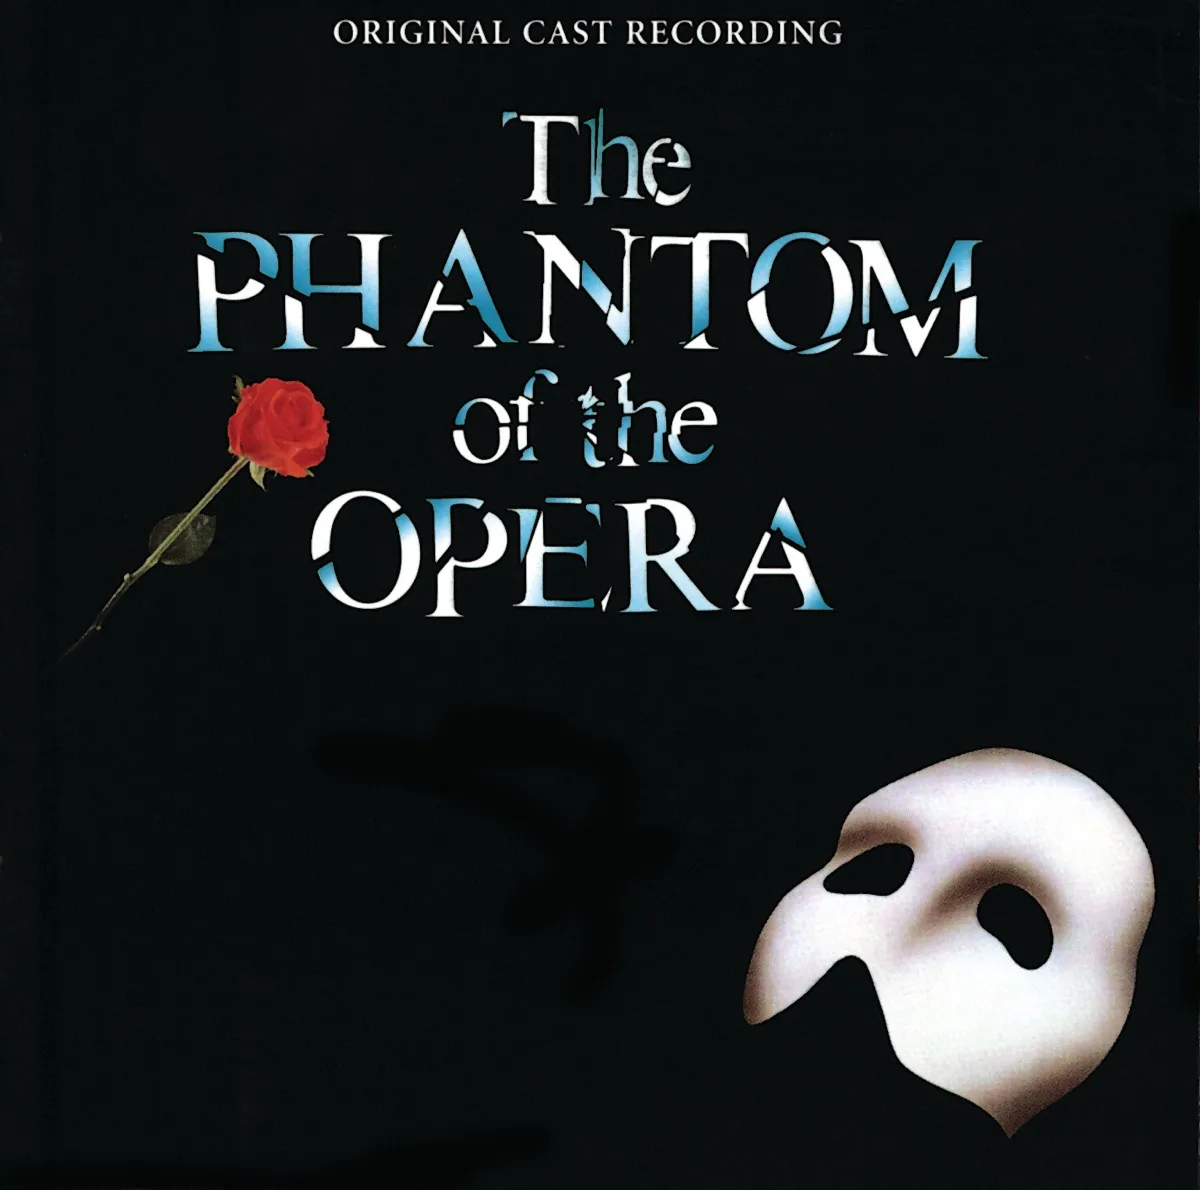 Phantom of the Opera cast recording